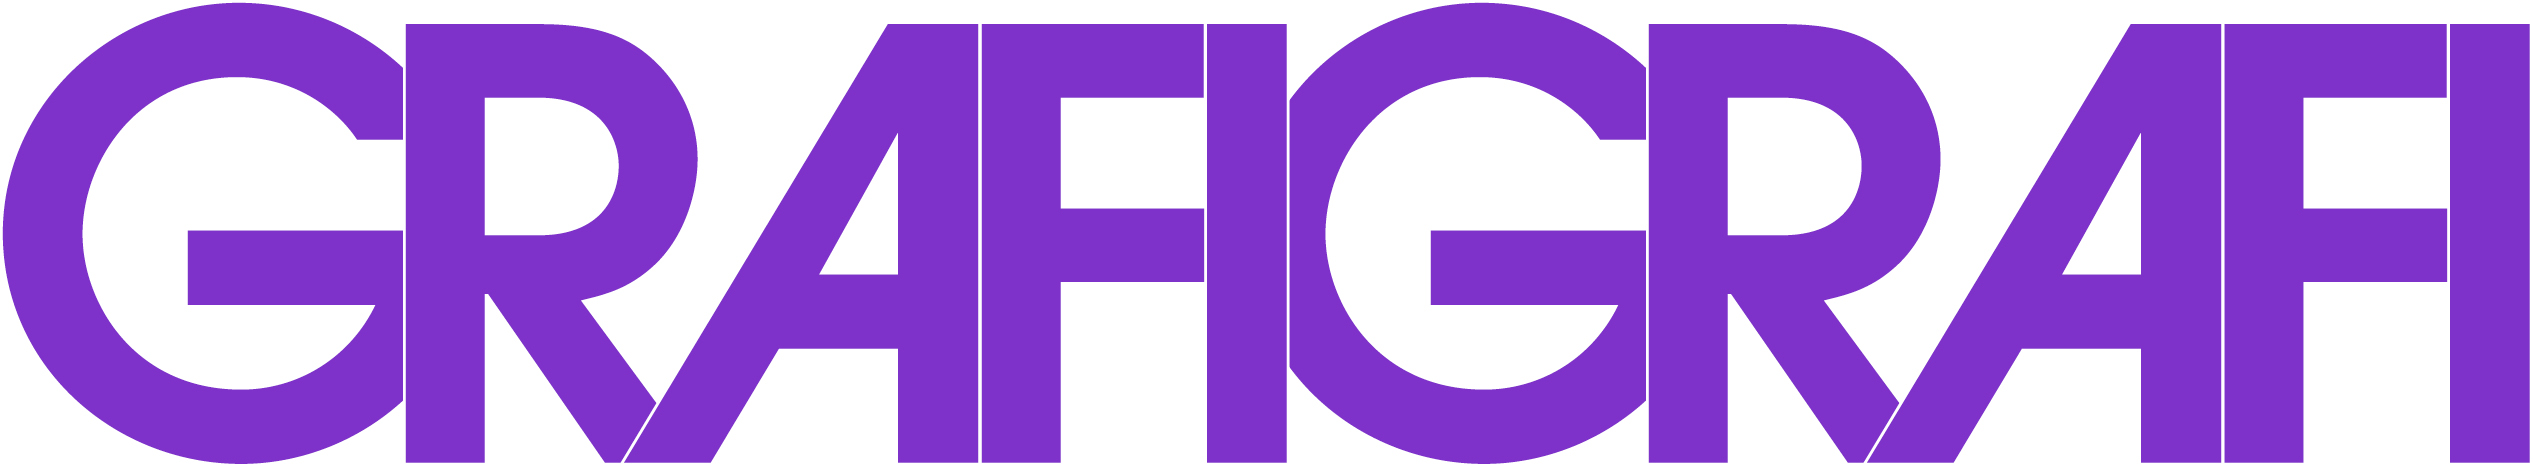 GRAFIGRAFI logo